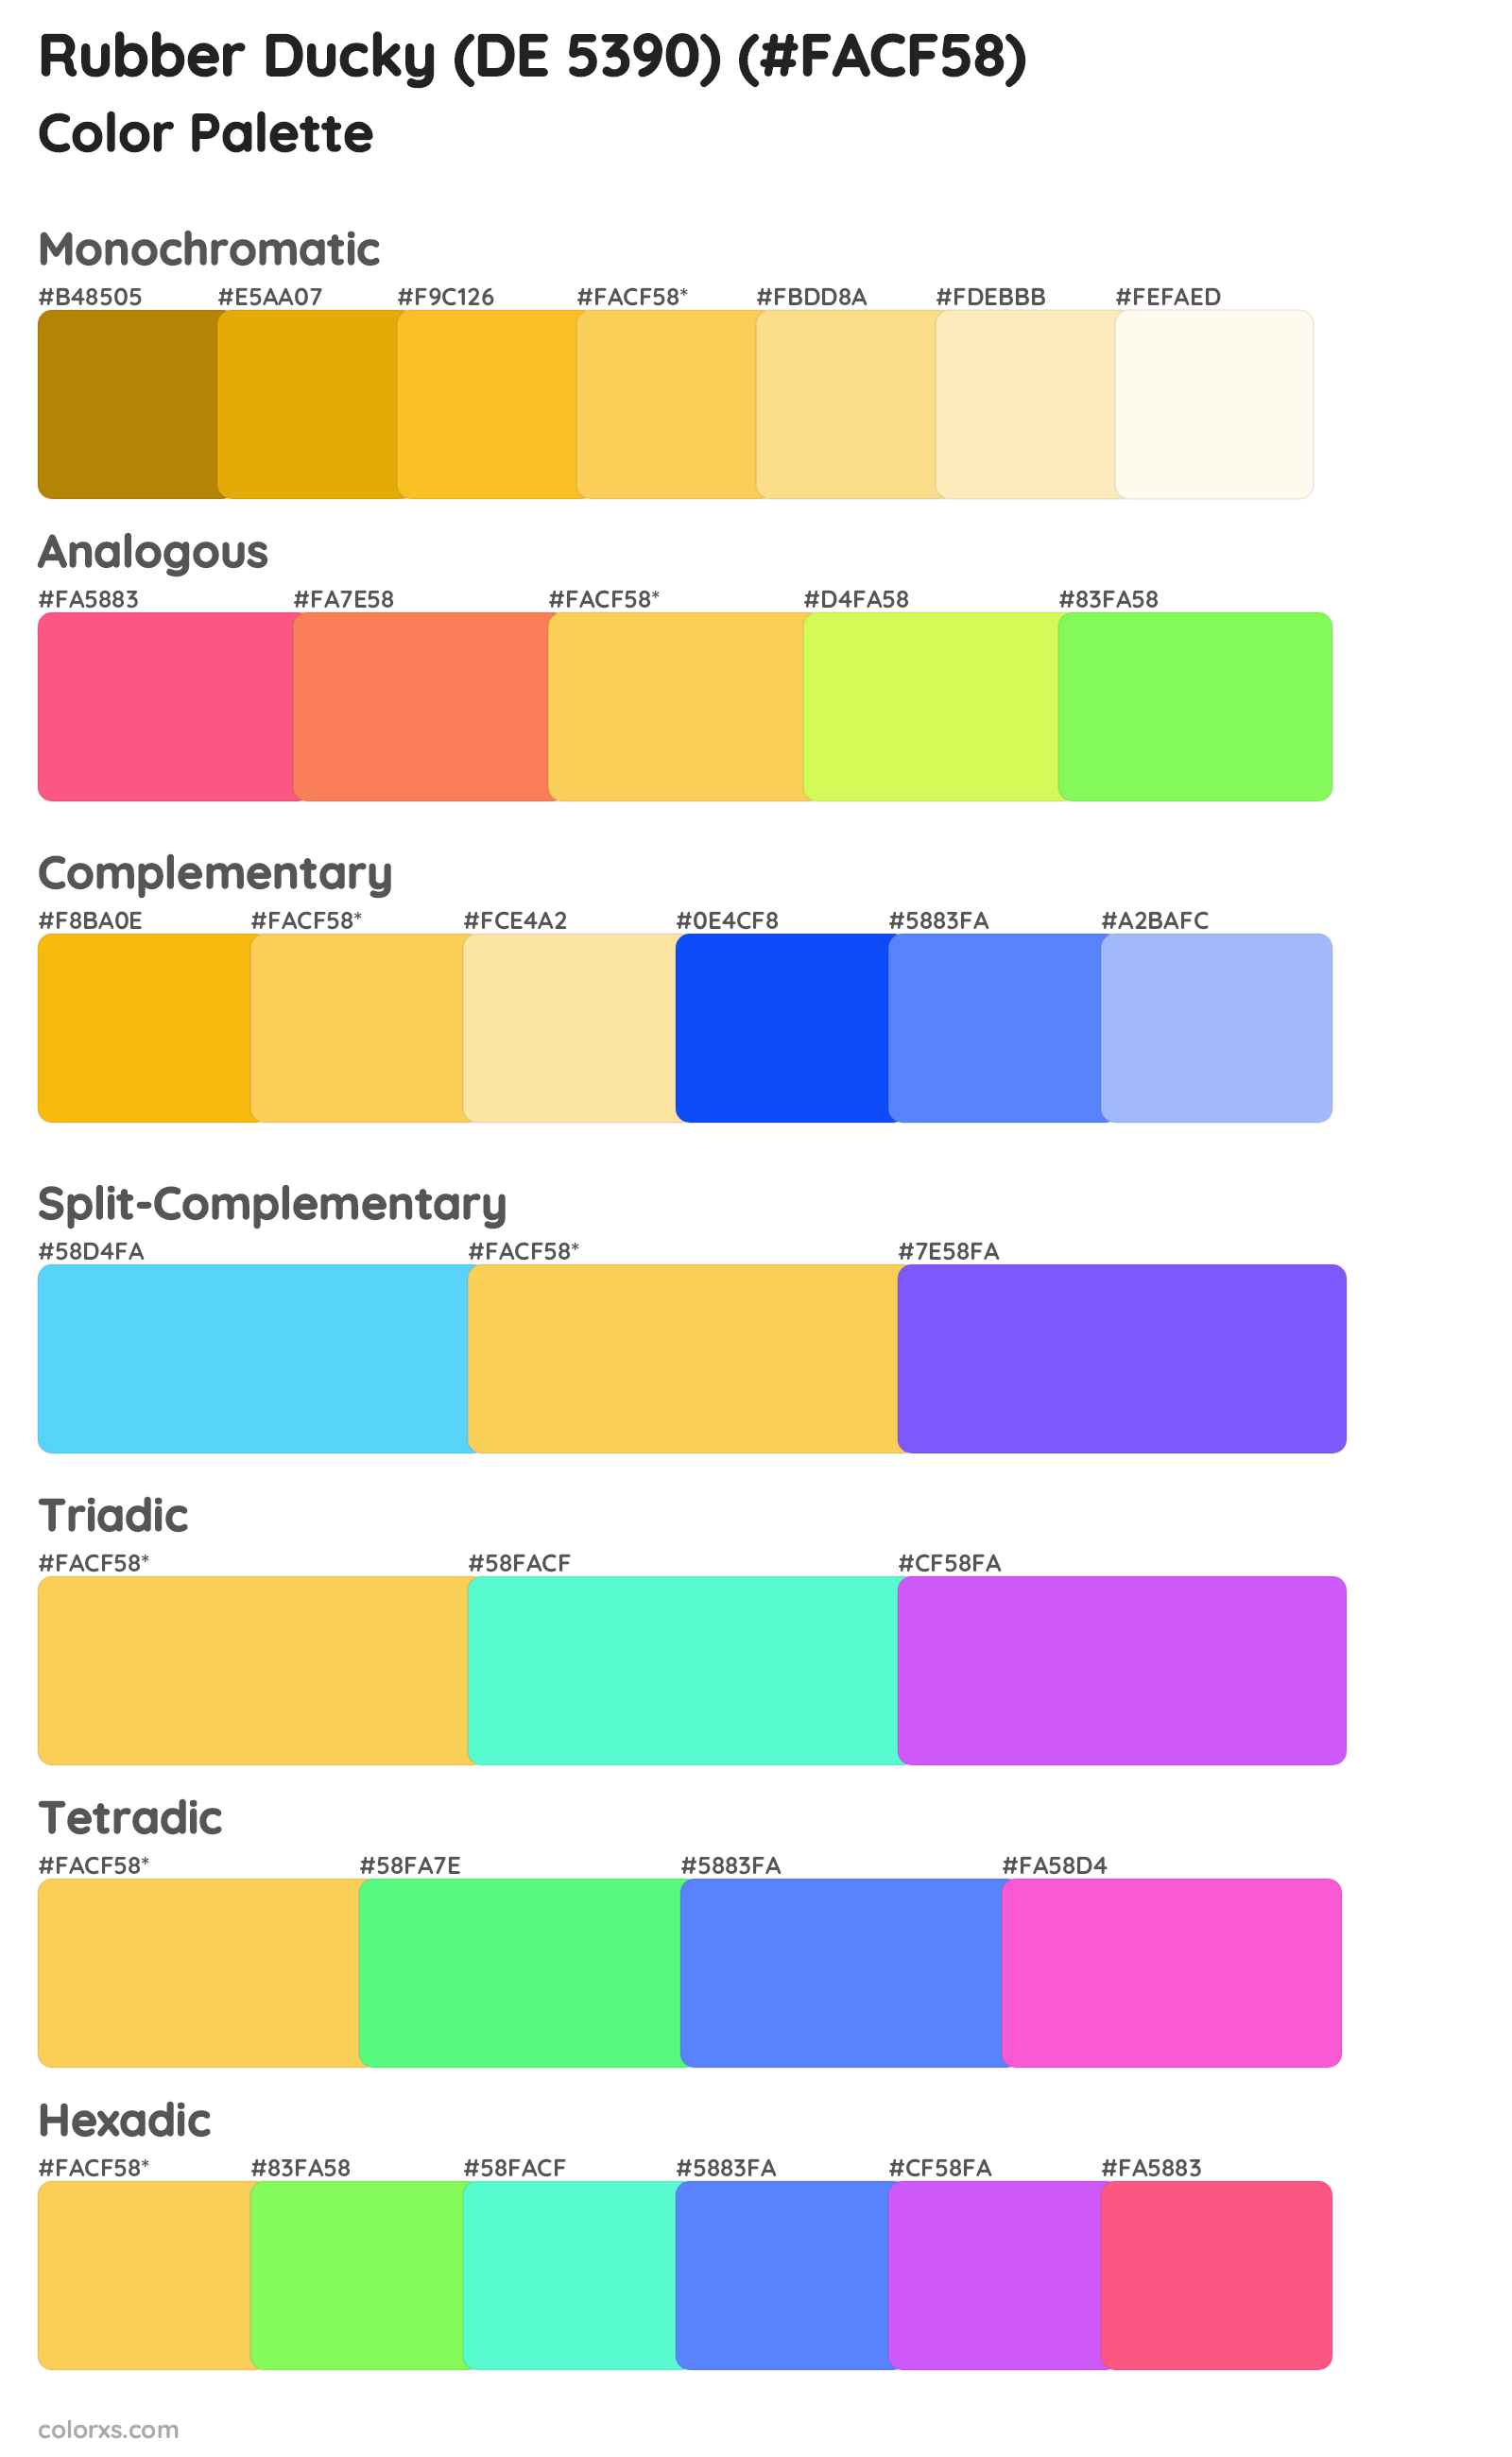 Rubber Ducky (DE 5390) Color Scheme Palettes